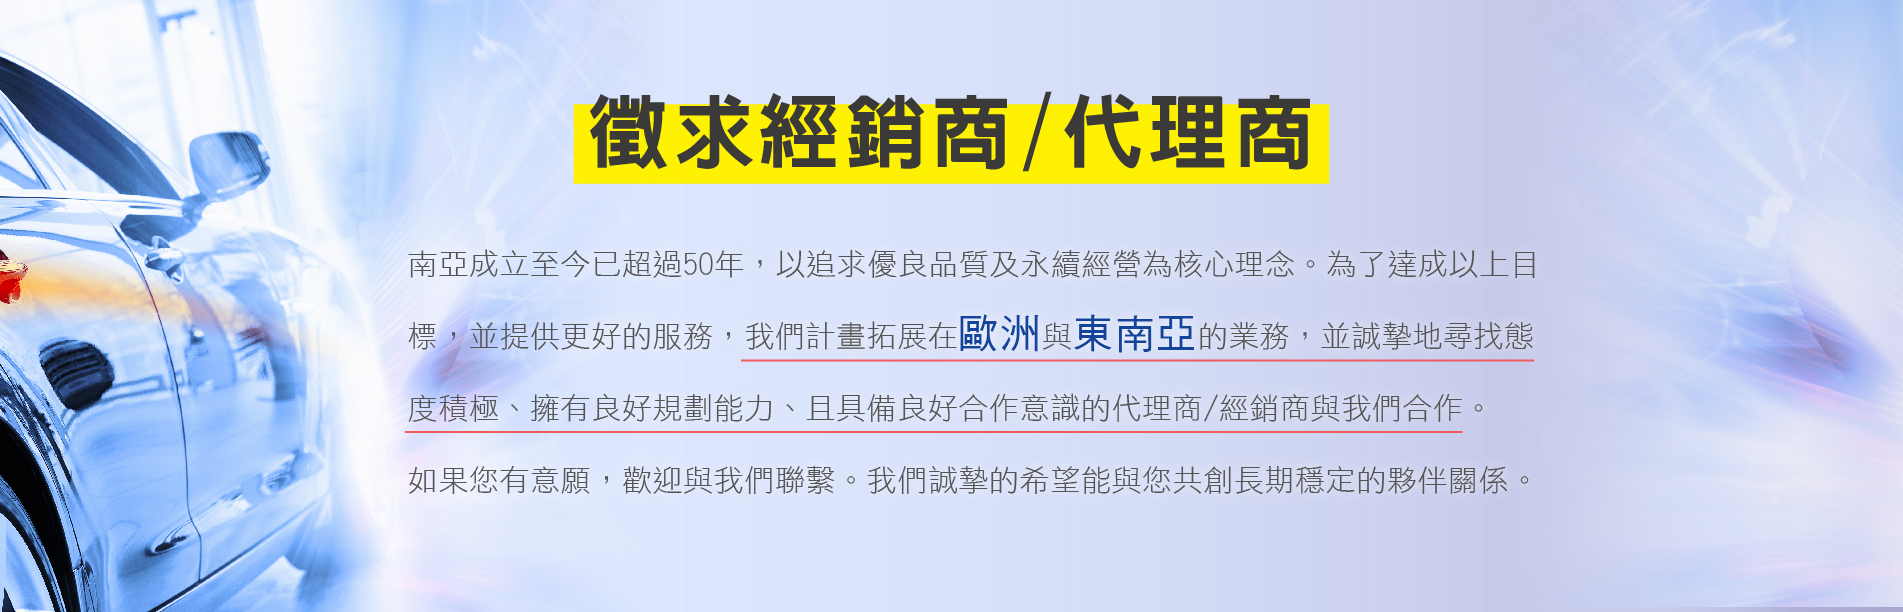 台灣南亞超級厚透明膠布工廠徵求國內外經銷商